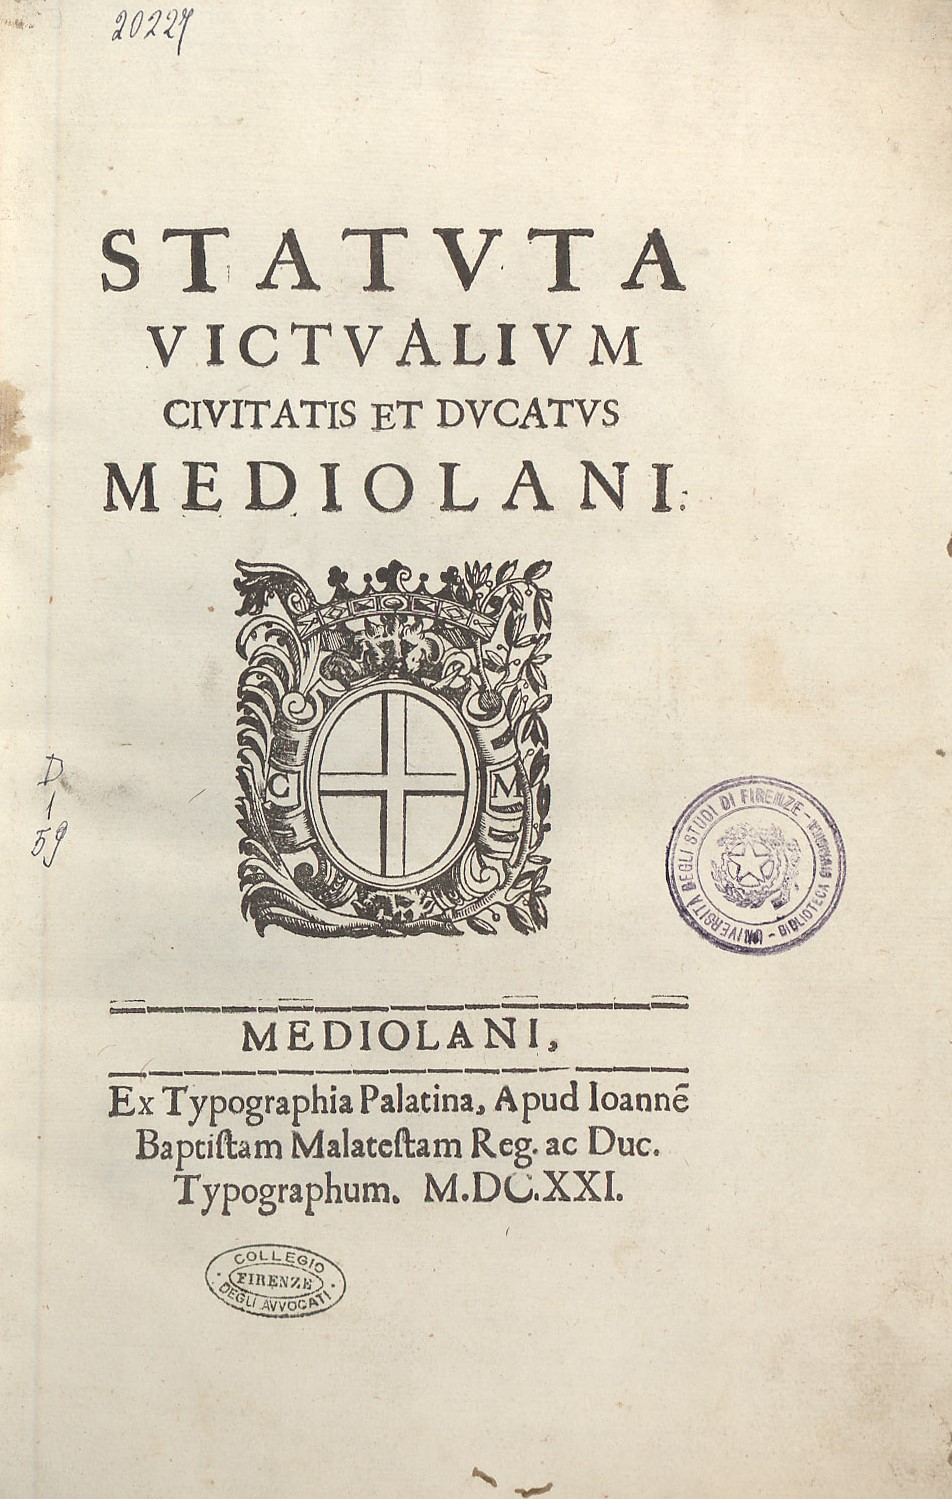 Statuta victualium civitatis et ducatus Mediolani